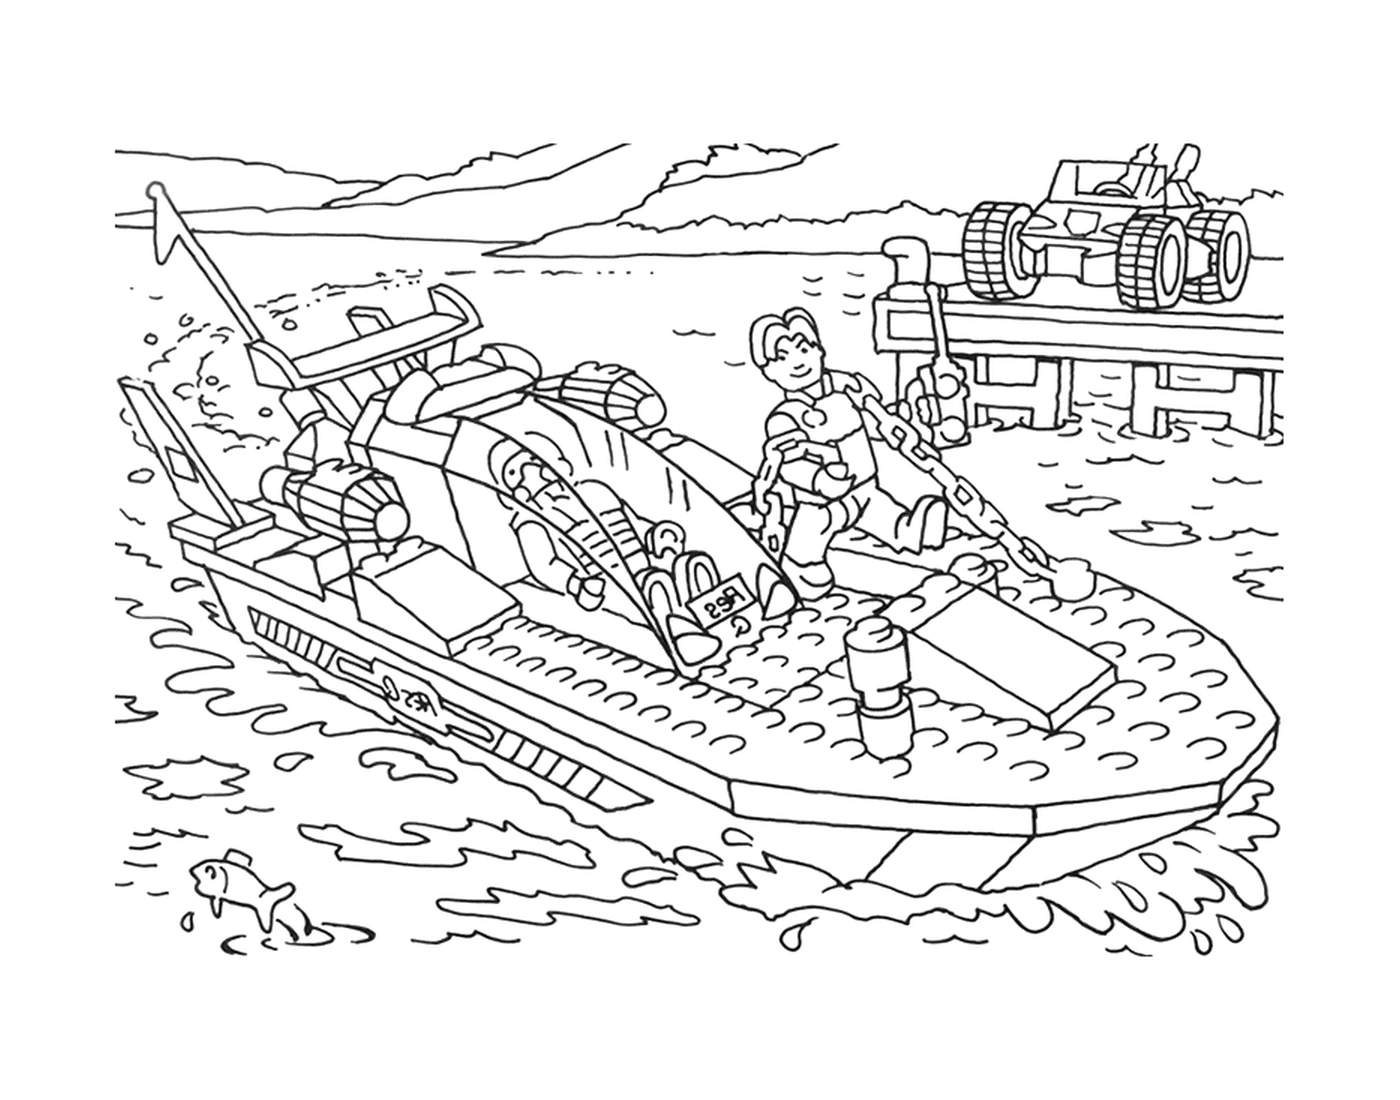  L'uomo su una barca Lego 